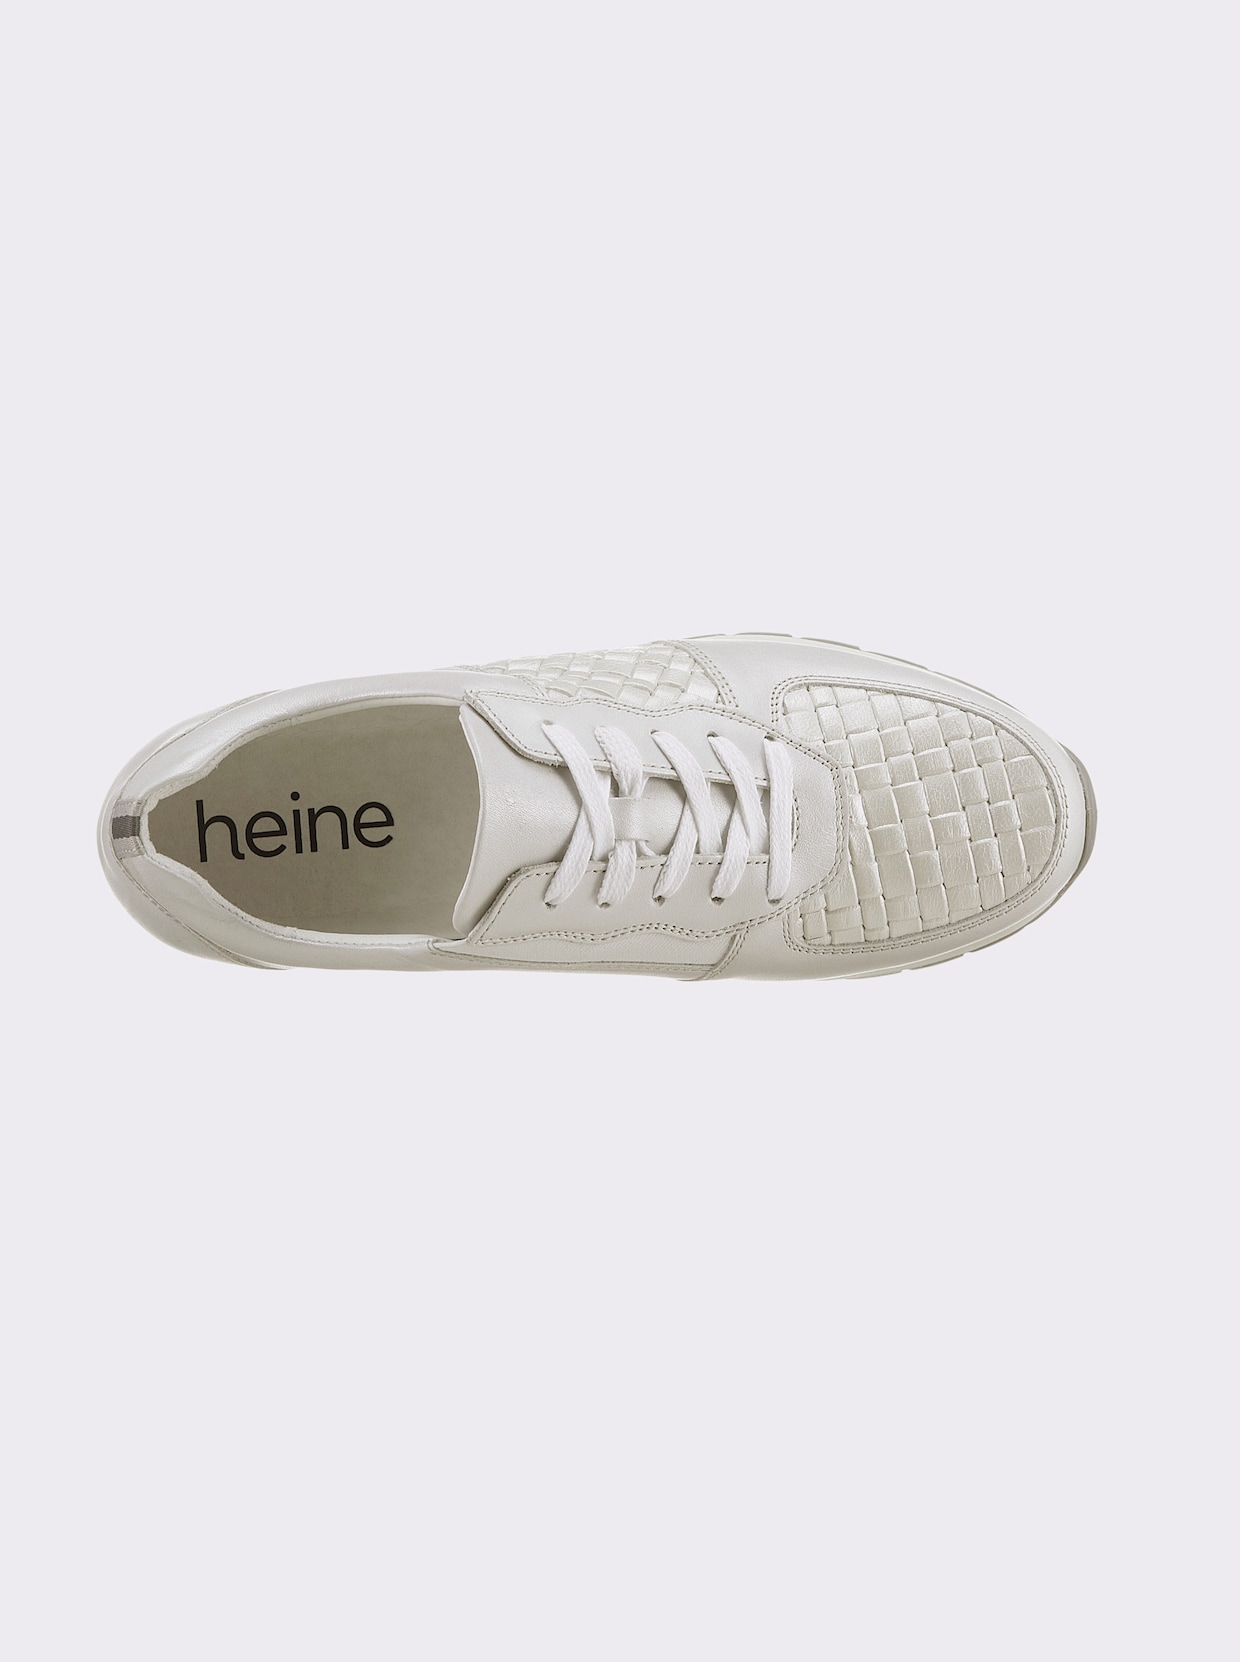 heine Sneaker - wit